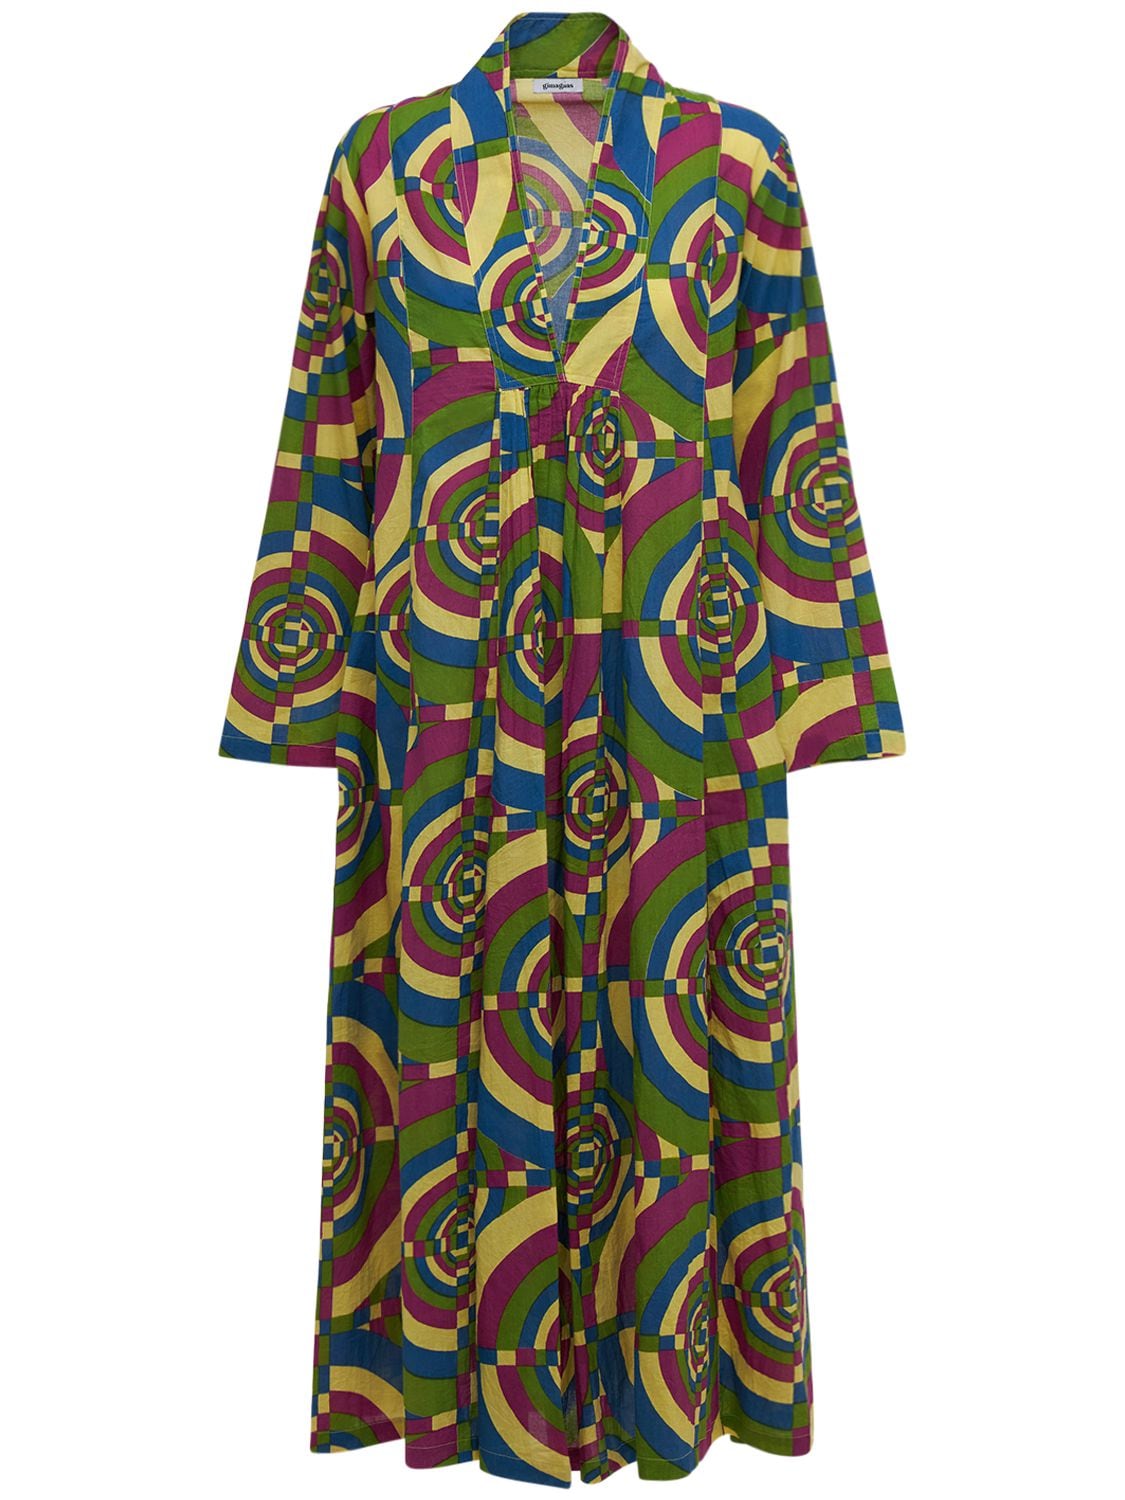 GIMAGUAS Lvr Exclusive Nina Printed Cotton Dress